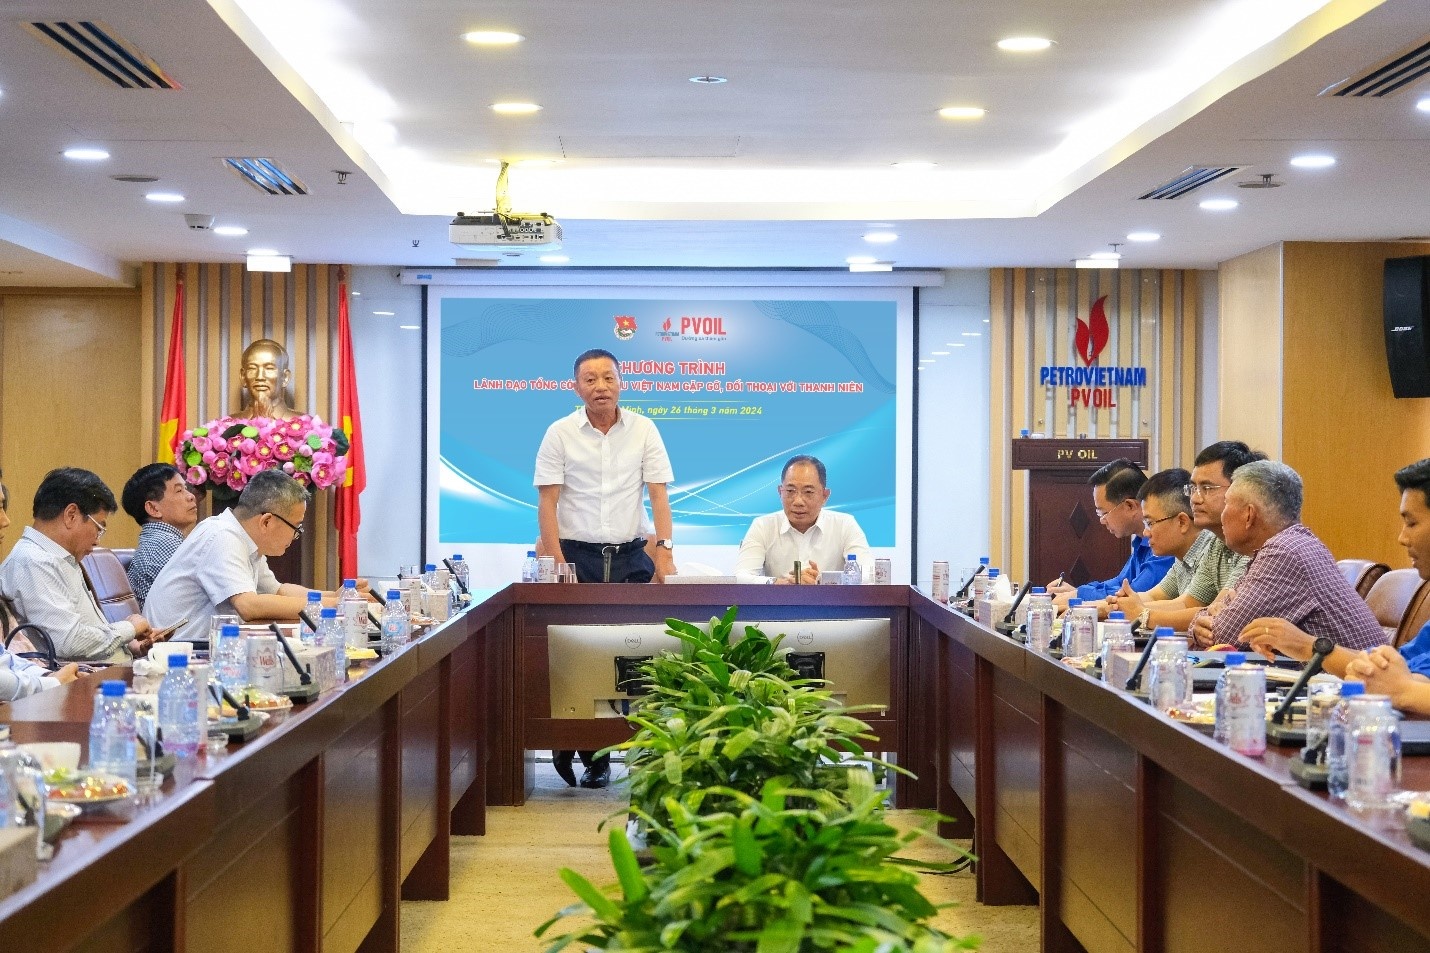 Đồng chí Đoàn Văn Nhuộm – Phó Bí thư Đảng ủy, Tổng Giám đốc Tổng công ty chia sẻ thông tin với đoàn viên thanh niên tại chương trình đối thoại.